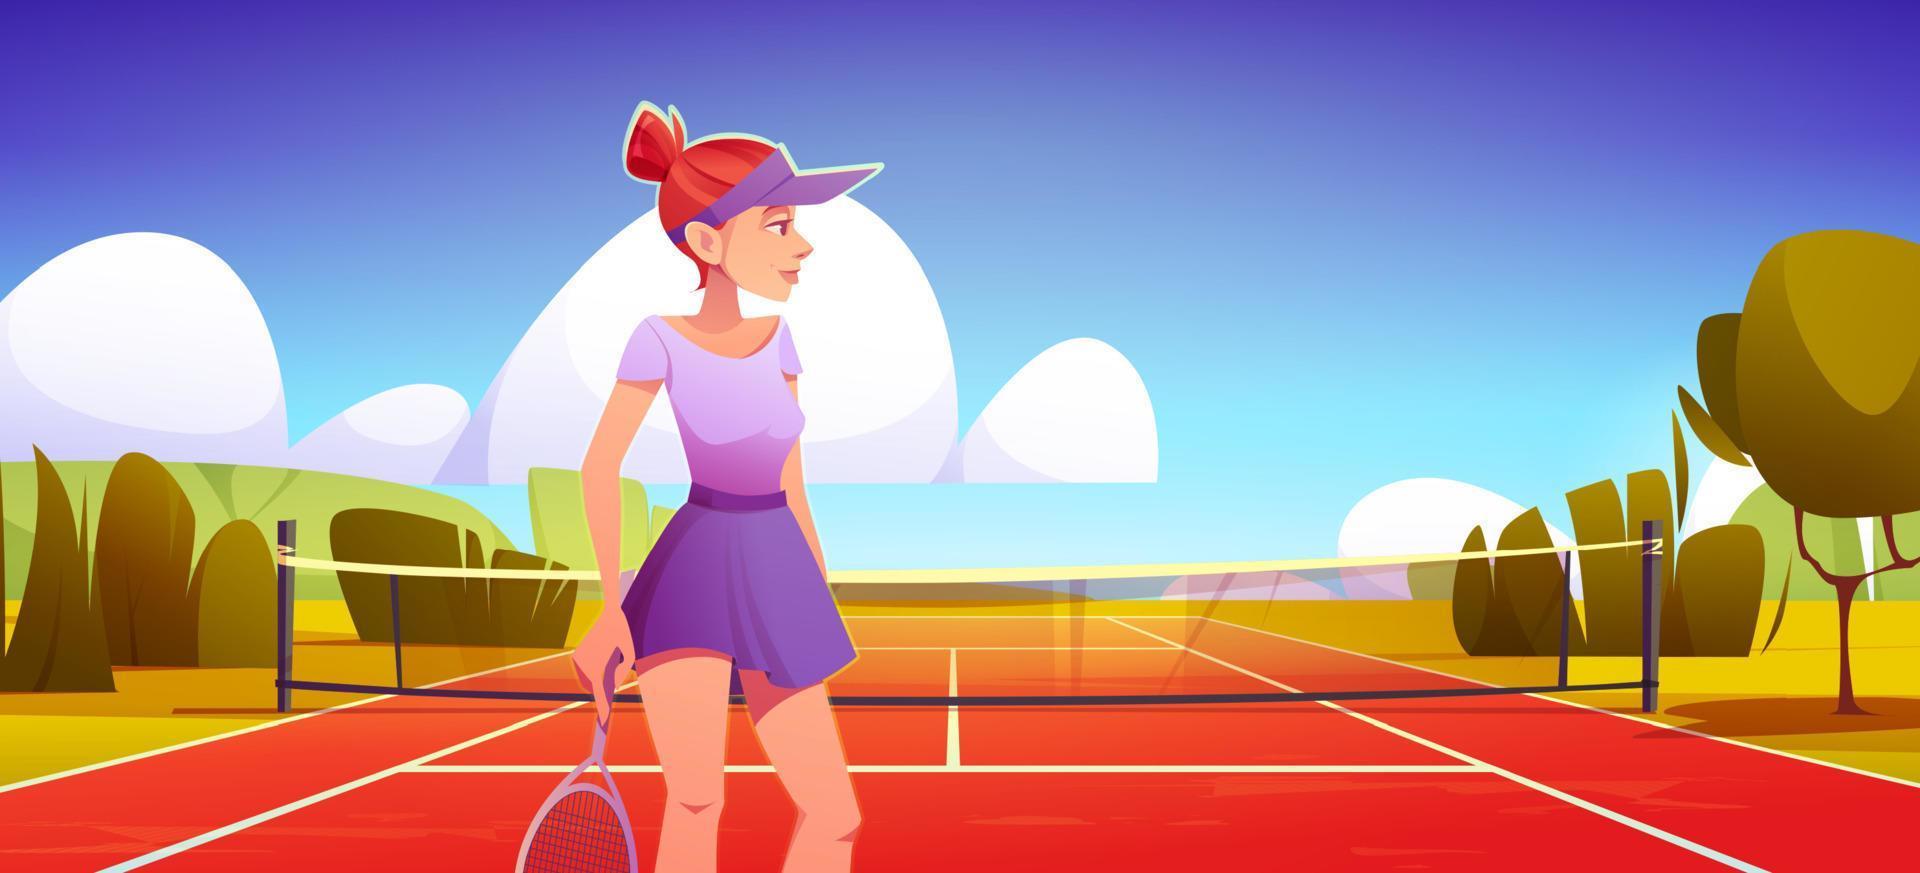 Junge Tennisspielerin trägt Uniform mit Schläger vektor